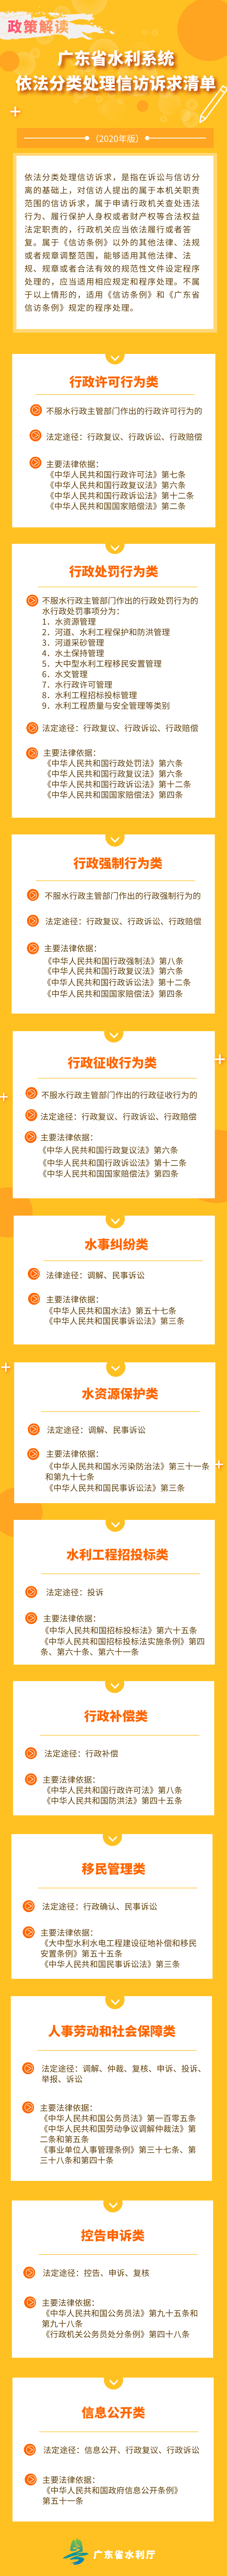 广东省水利系统依法分类处理信访诉求清单.png